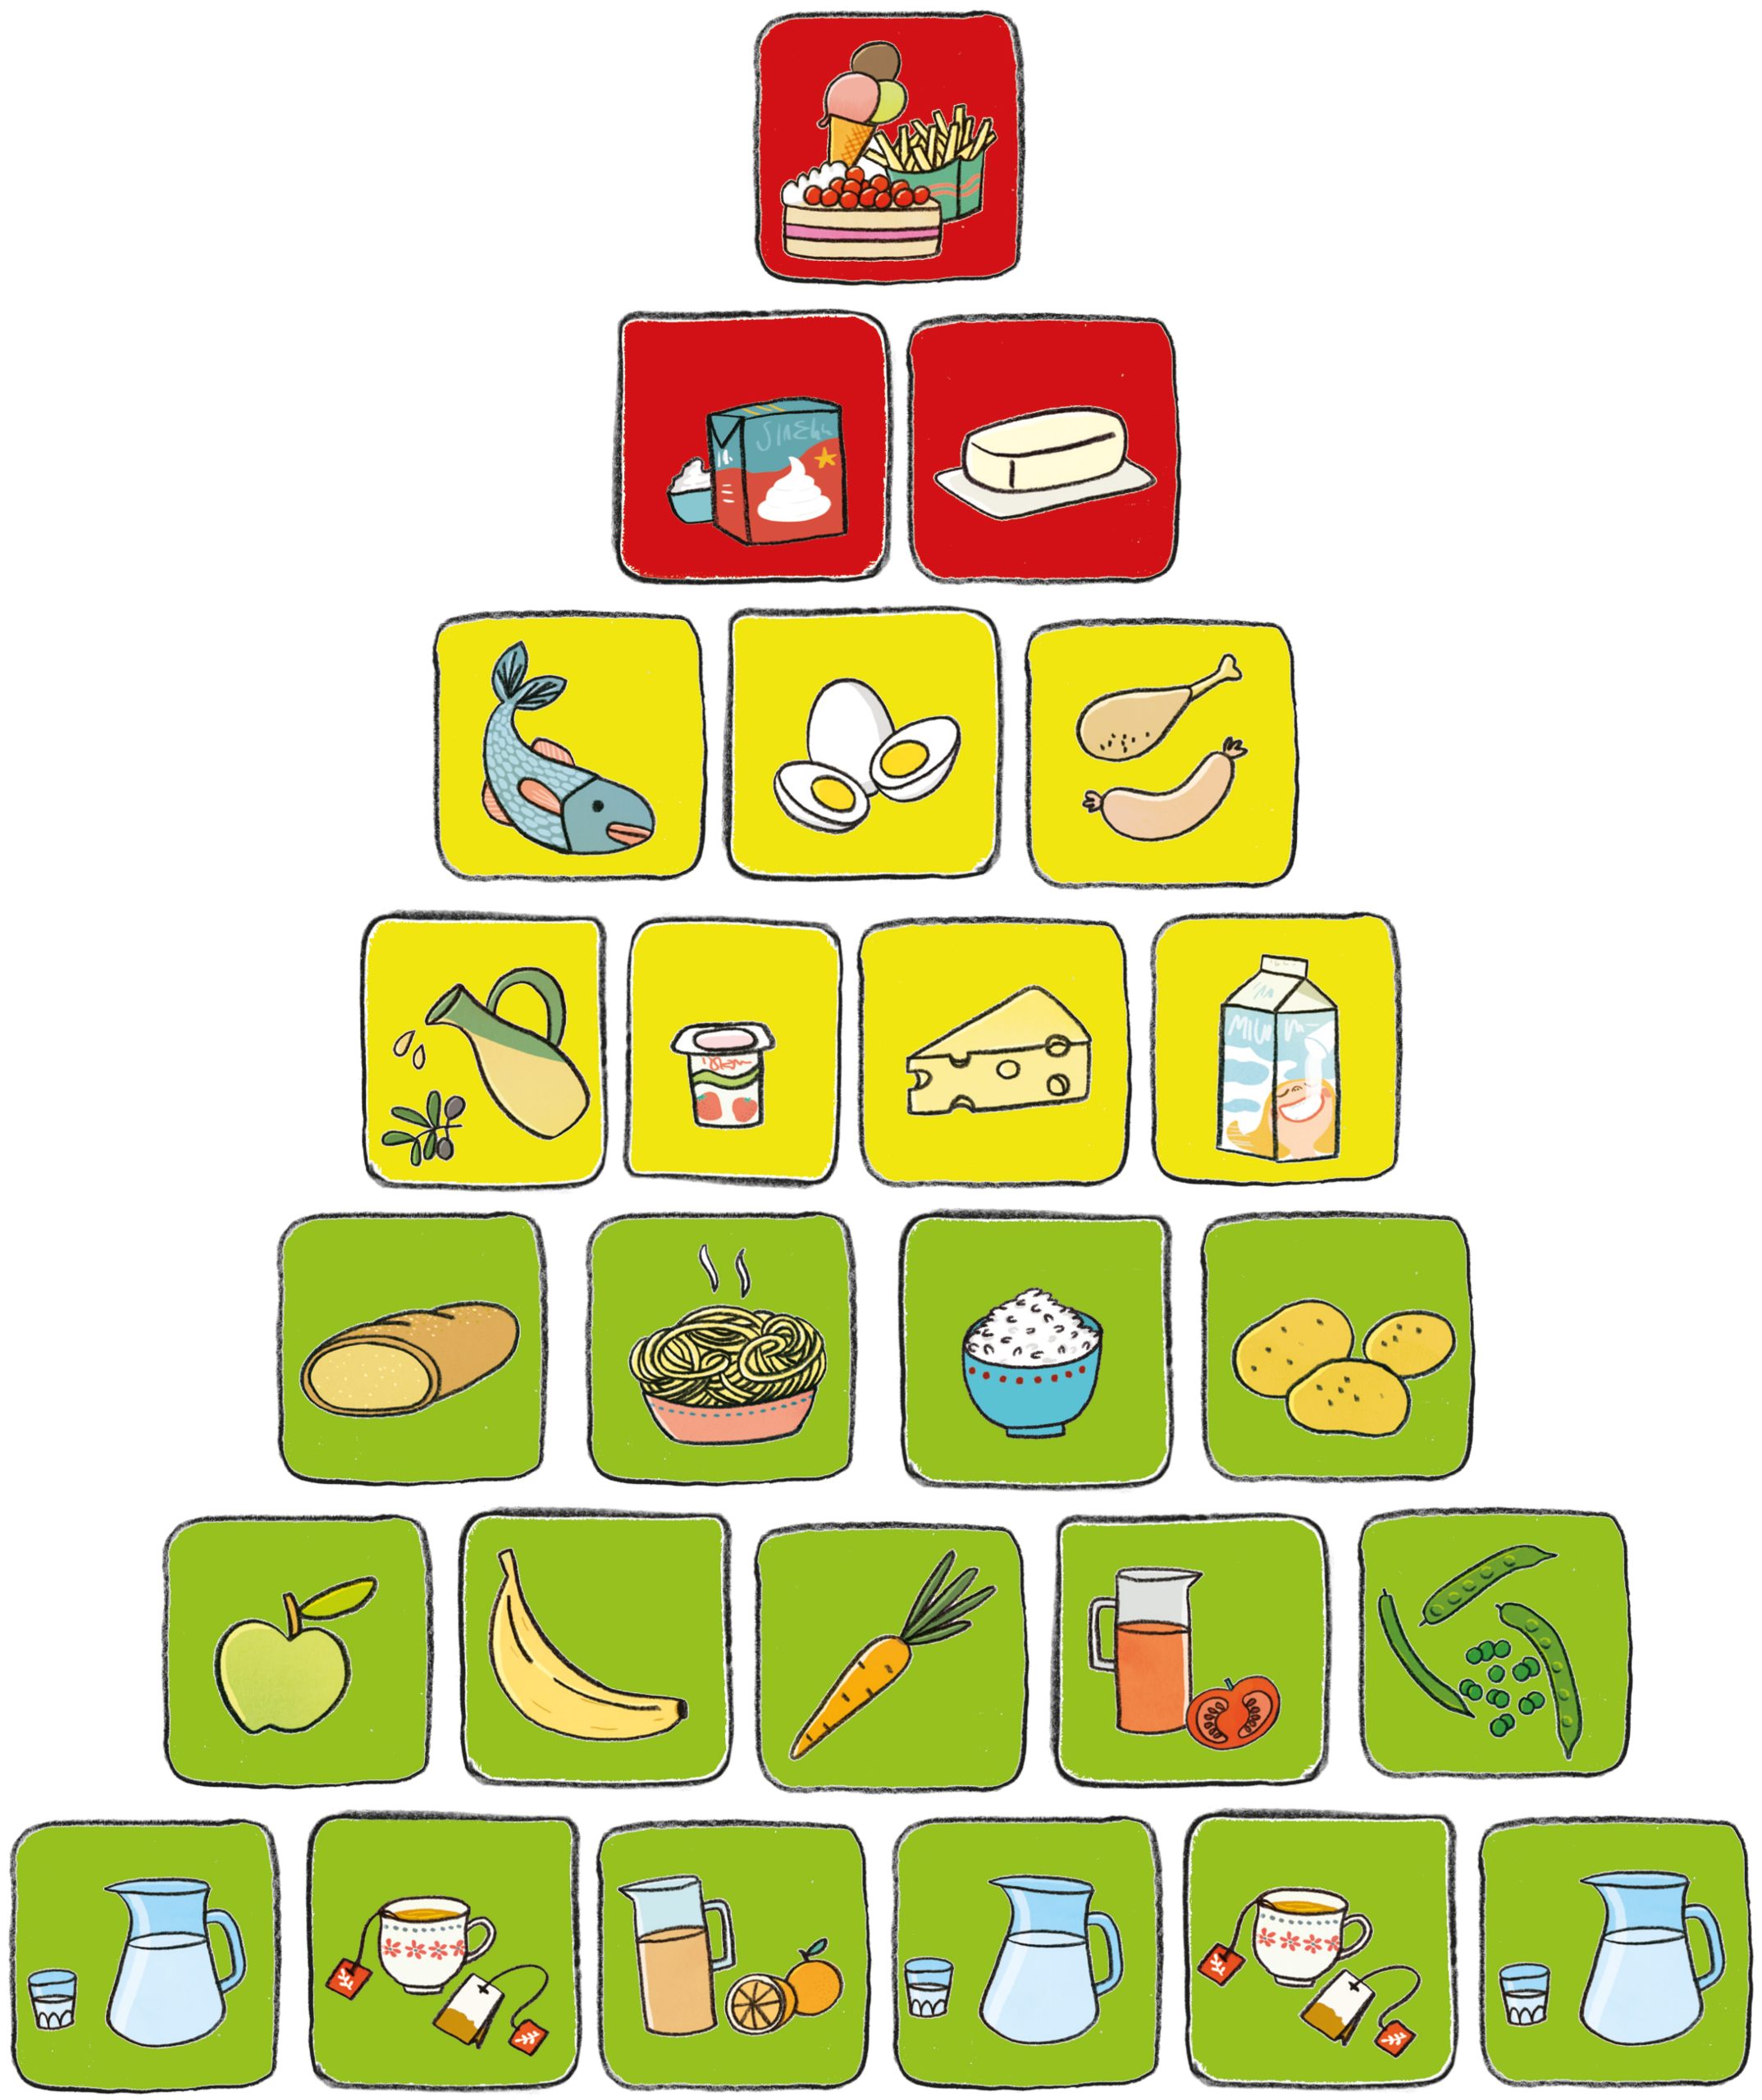 Ernährungspyramide: grün = täglich, gelb = wöchentlich, rot = selten